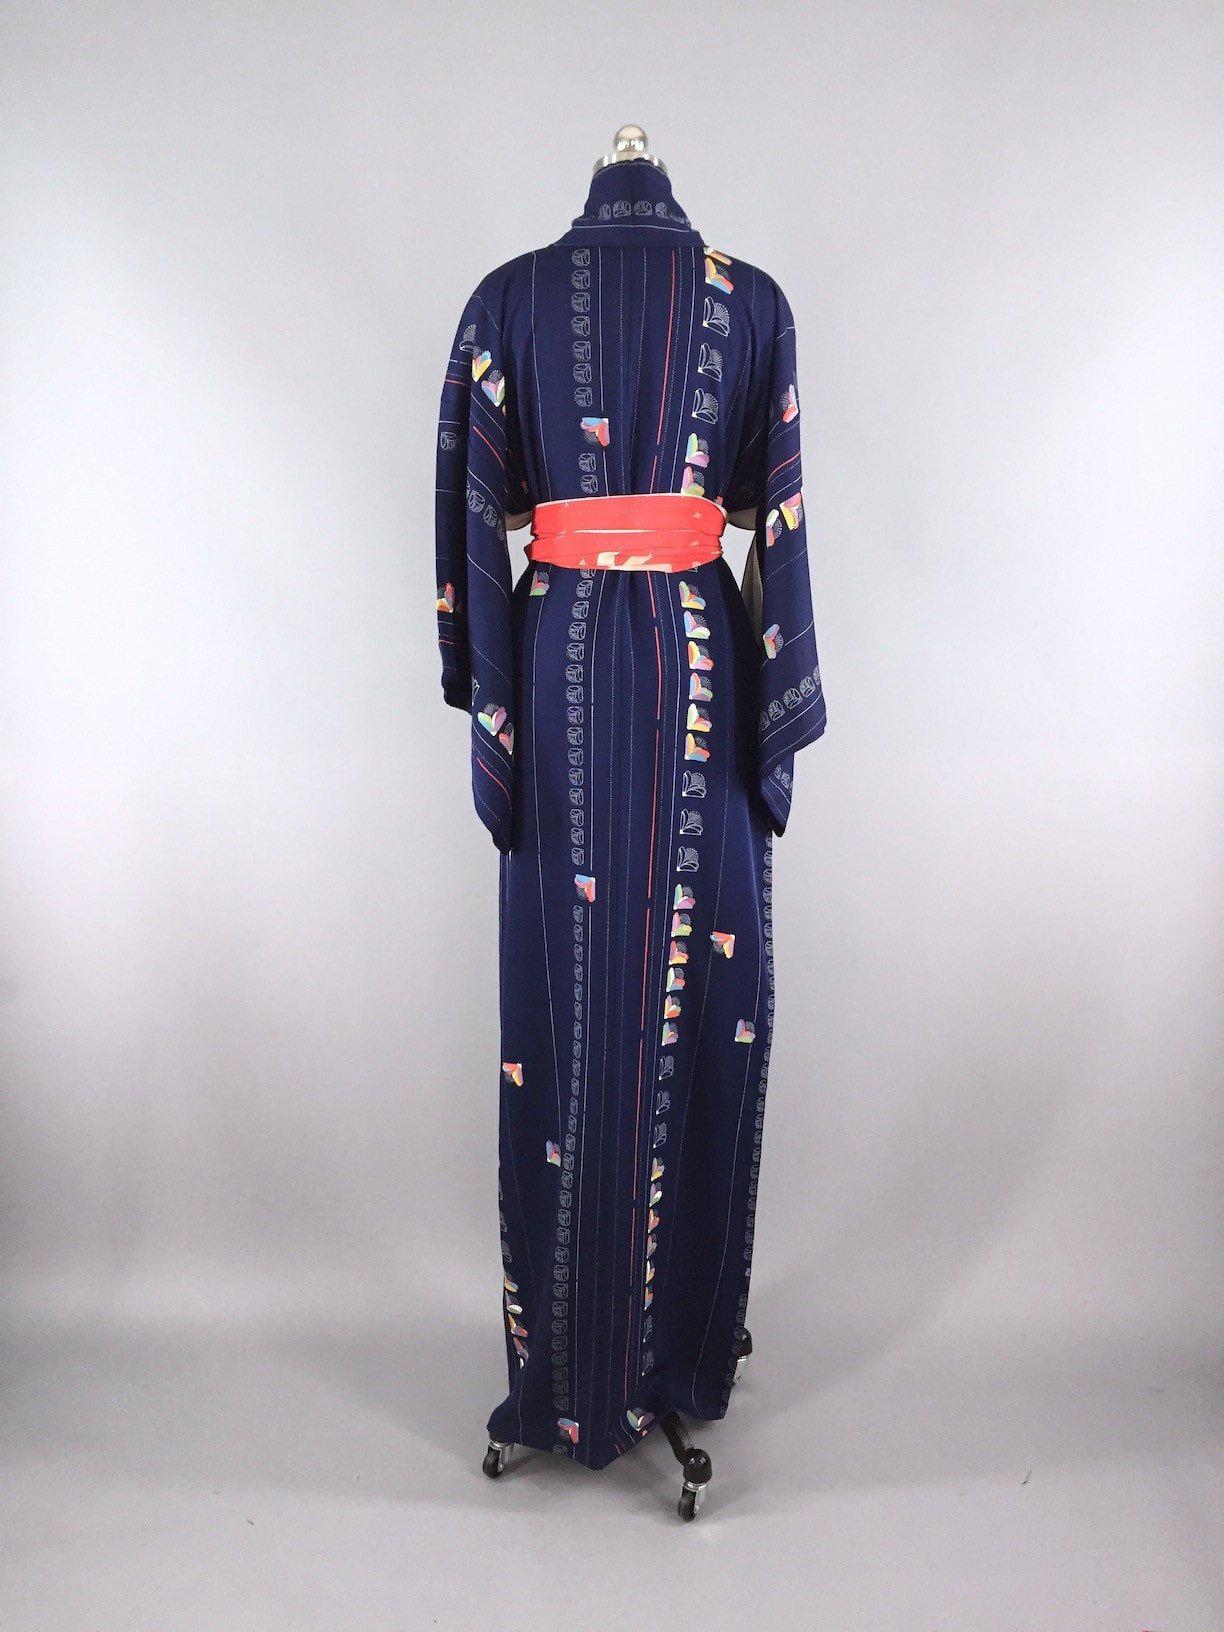 Vintage 1960s Vintage Kimono Robe / Mod Navy Blue Floral - ThisBlueBird